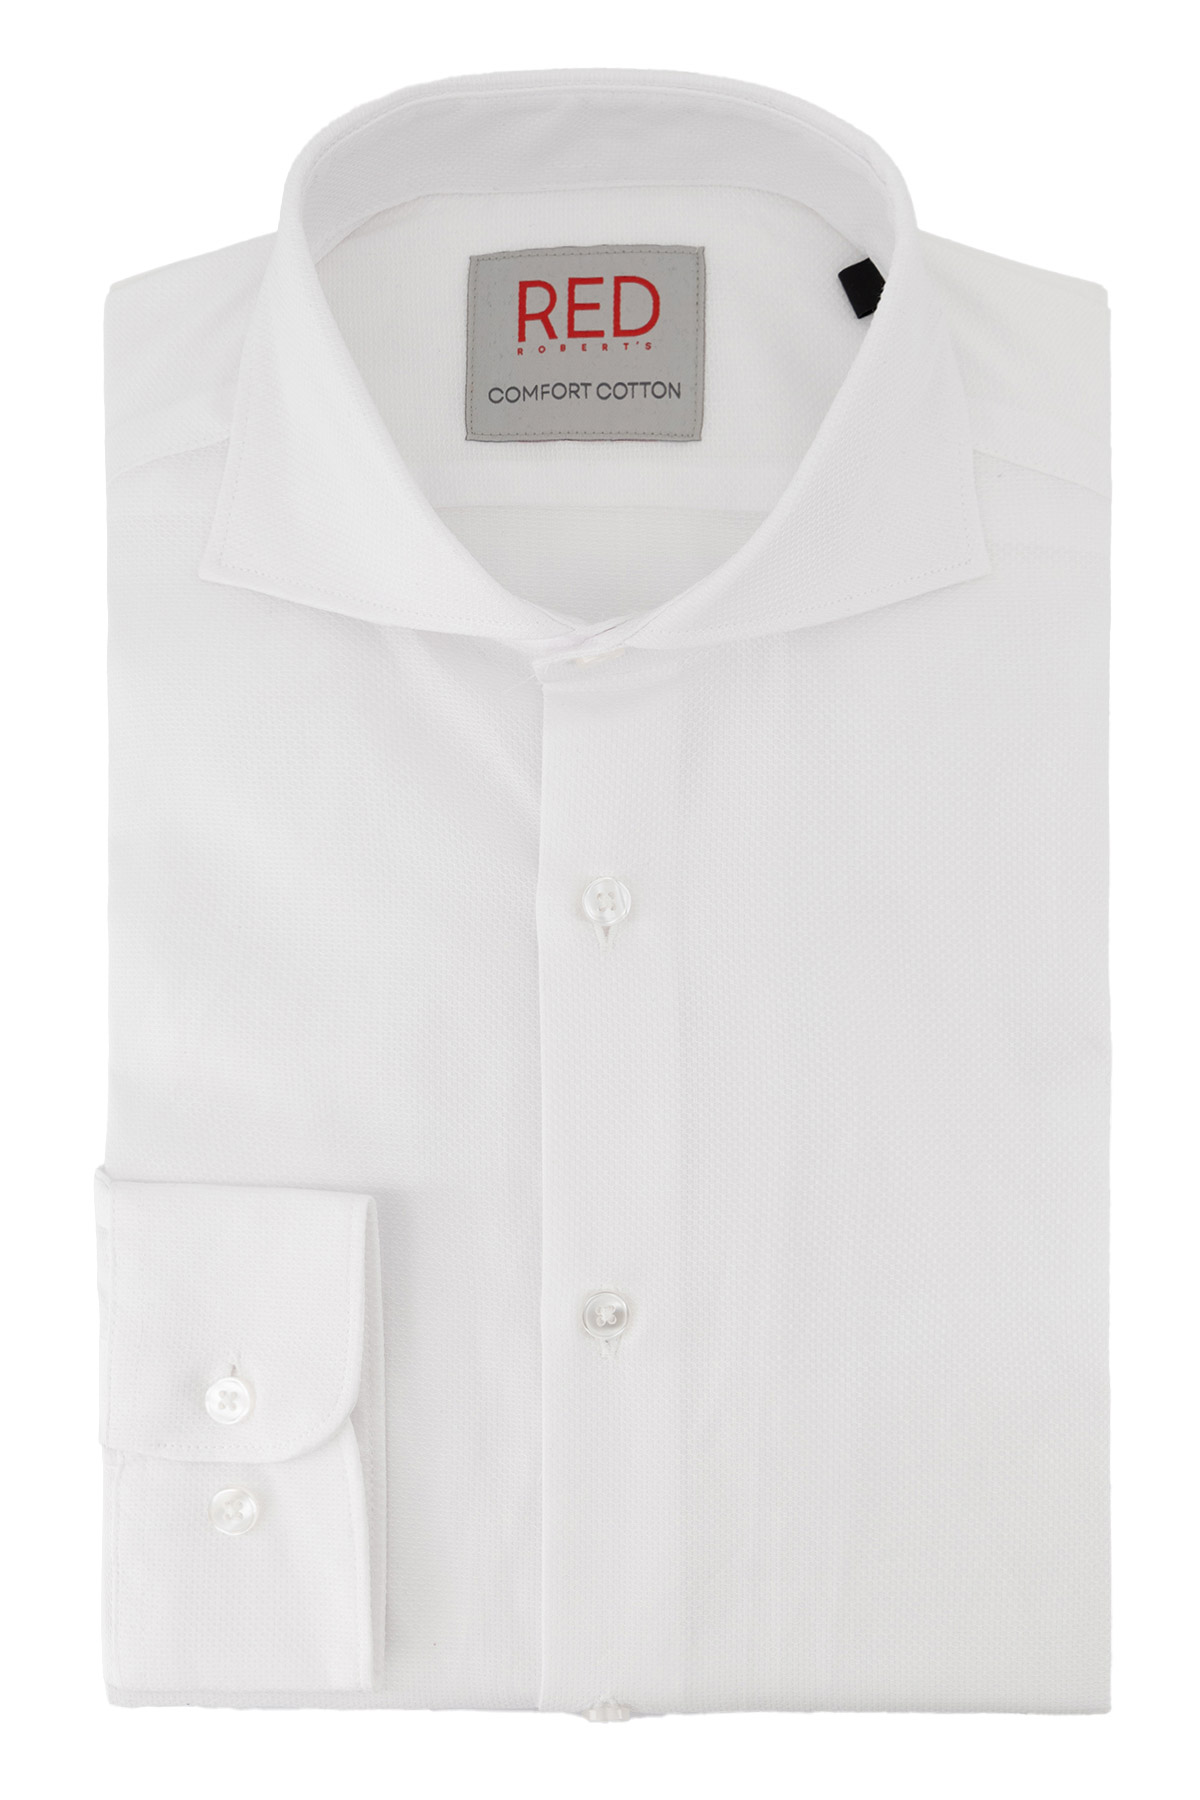 Camisa Vestir COMFORT COTTON Roberts Red Color Blanco Slim Fit